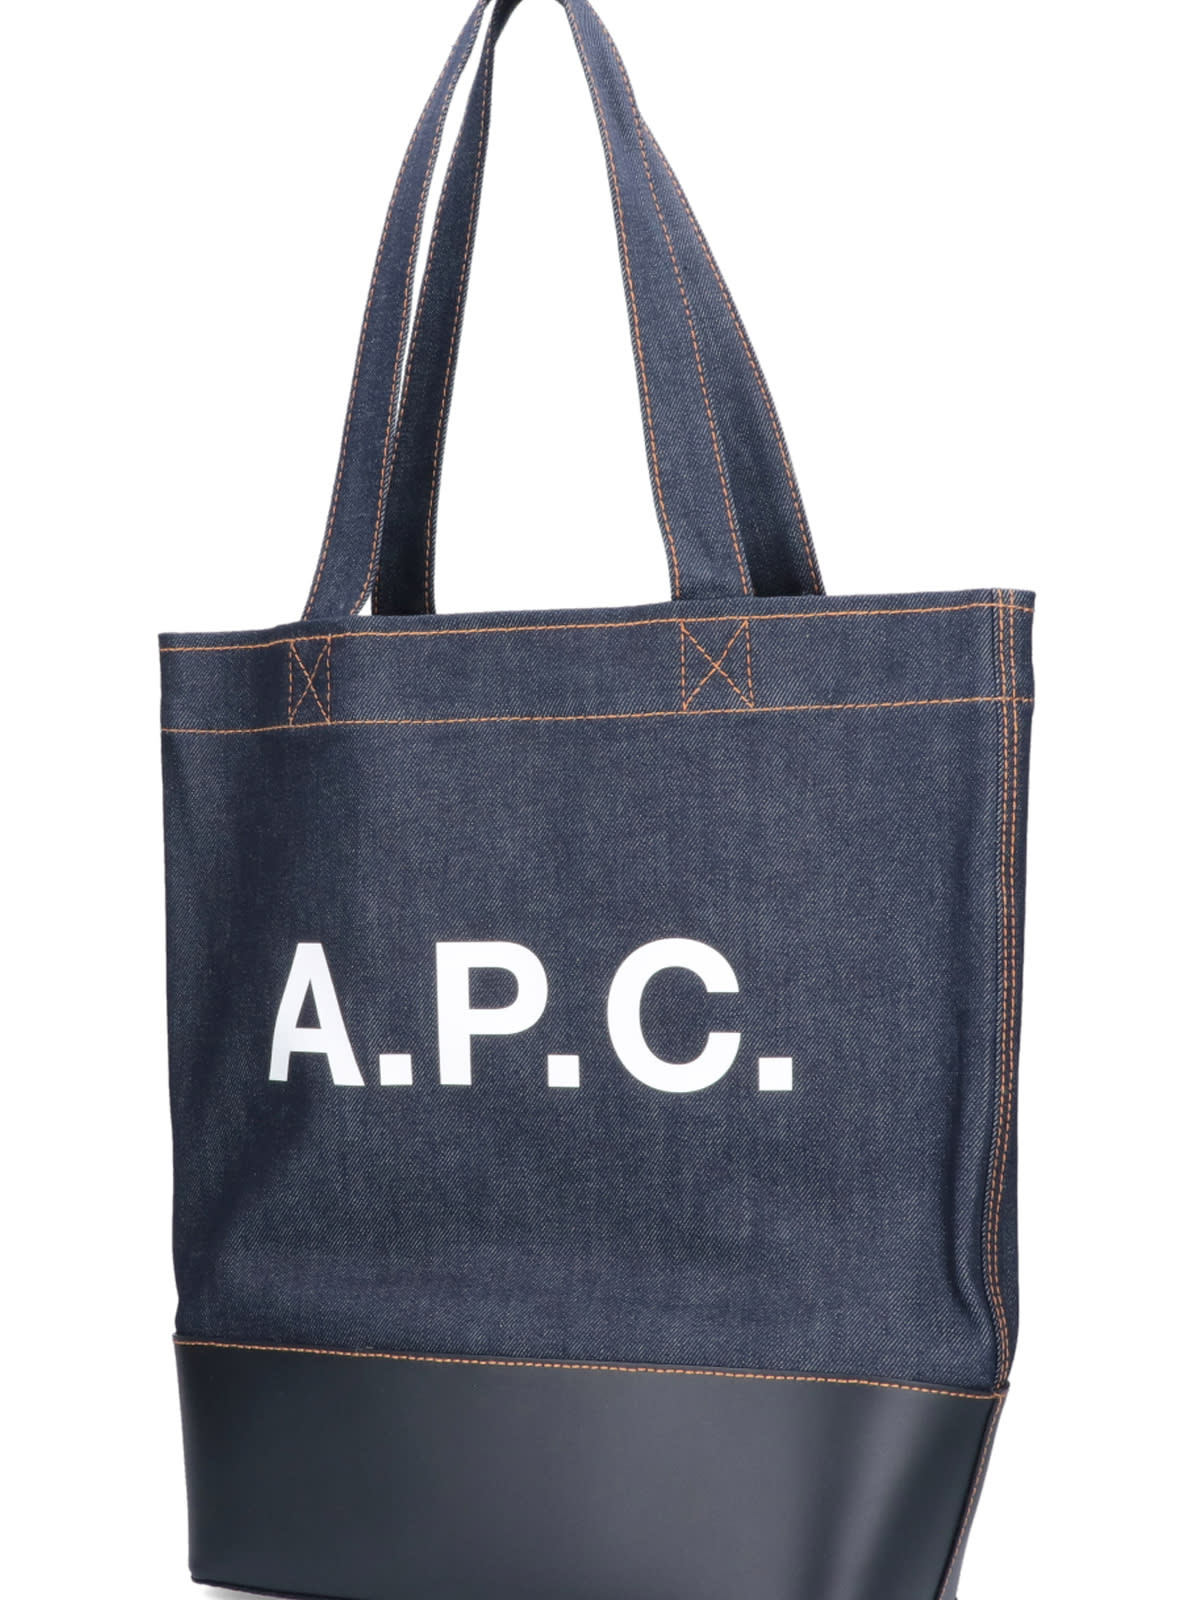 Shop Apc Axelle Tote Bag A.p.c.